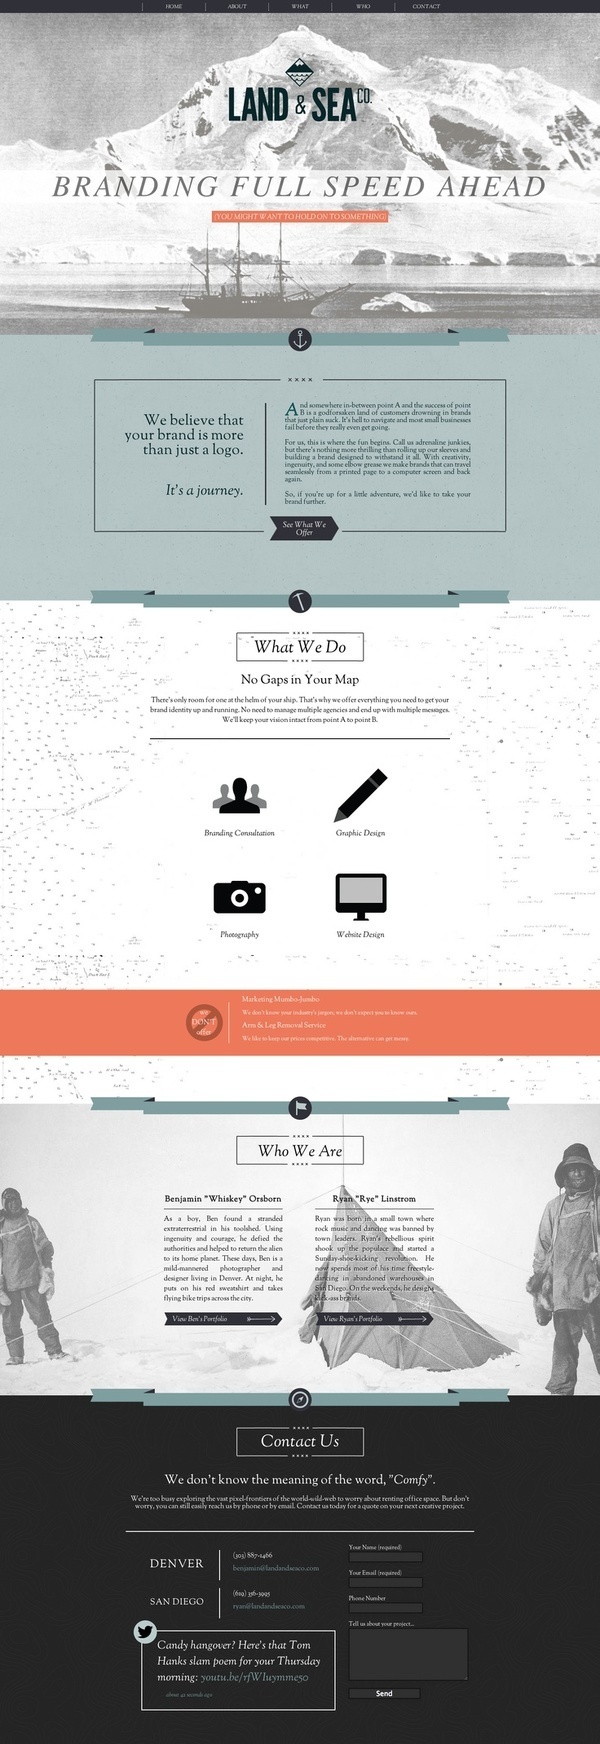 Land and Sea Website Design #website #layout #design #web